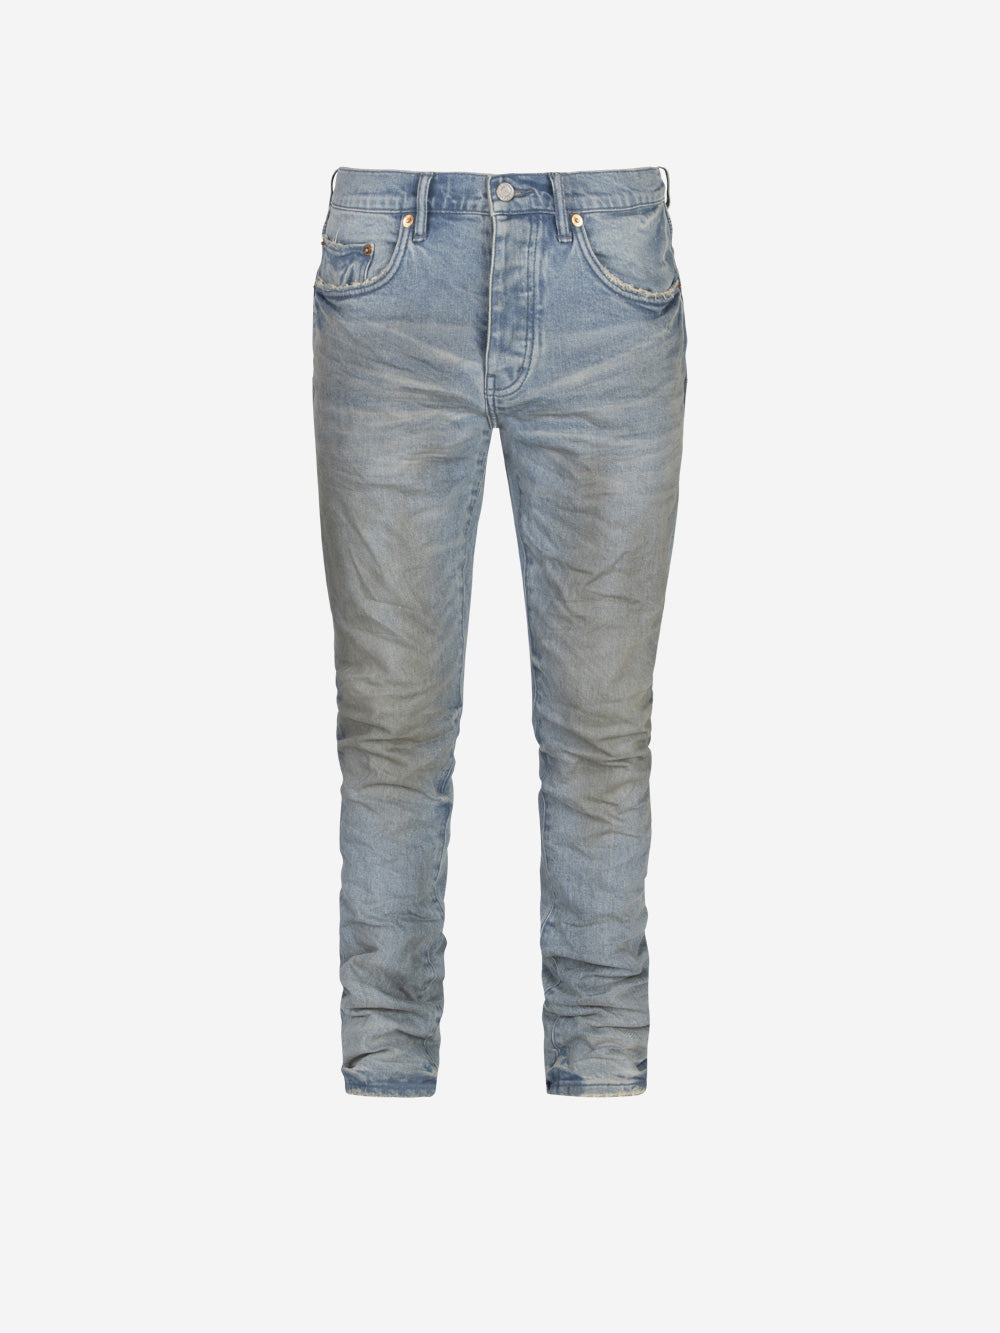 PURPLE BRAND P001 Low Rise Skinny Jeans P001 | Urbanstaroma